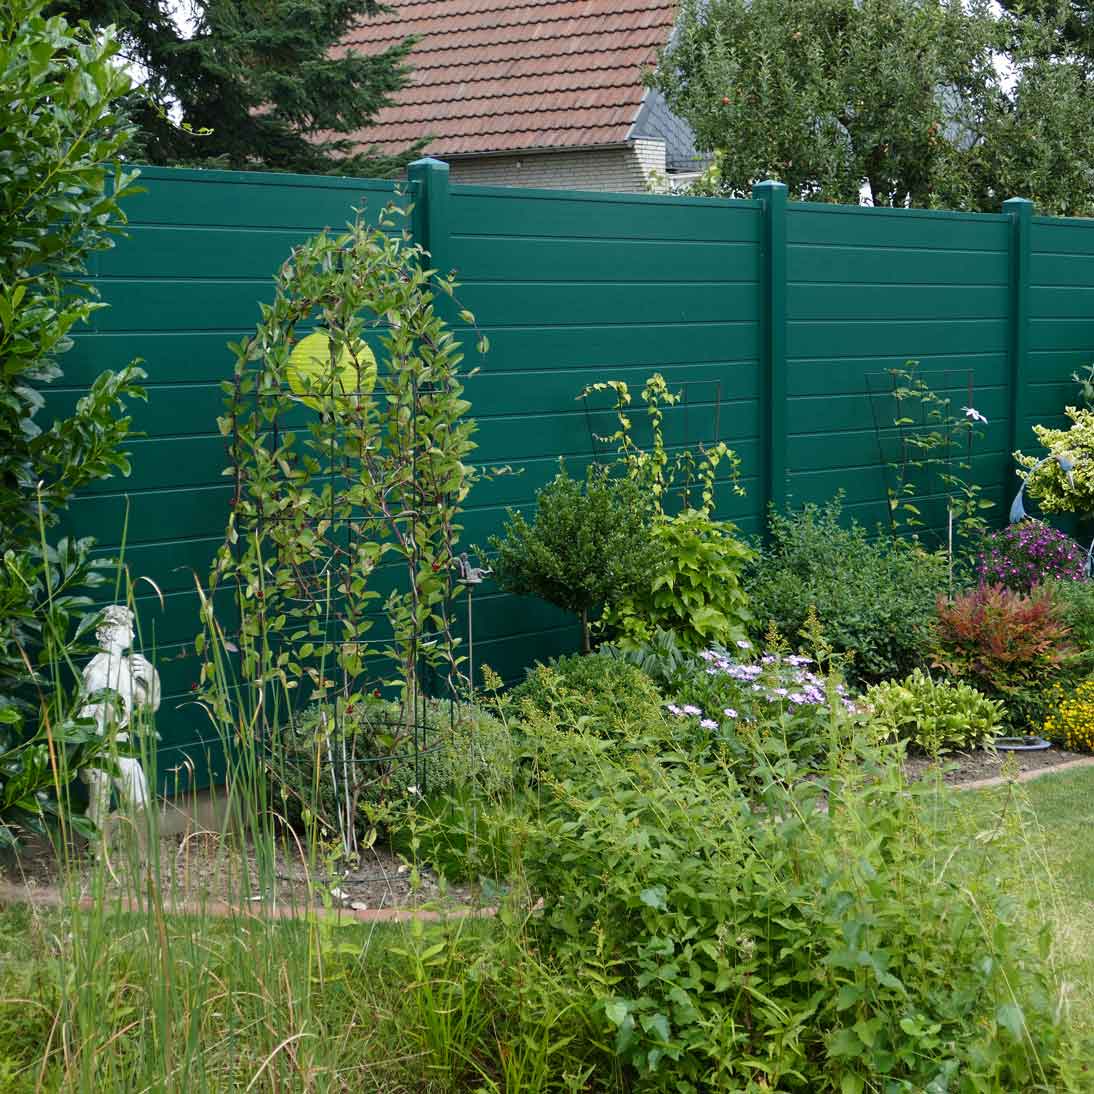 Sichtschutzwand in Grün aus Kunststoff im Garten als grüne Wand wie eine Hecke